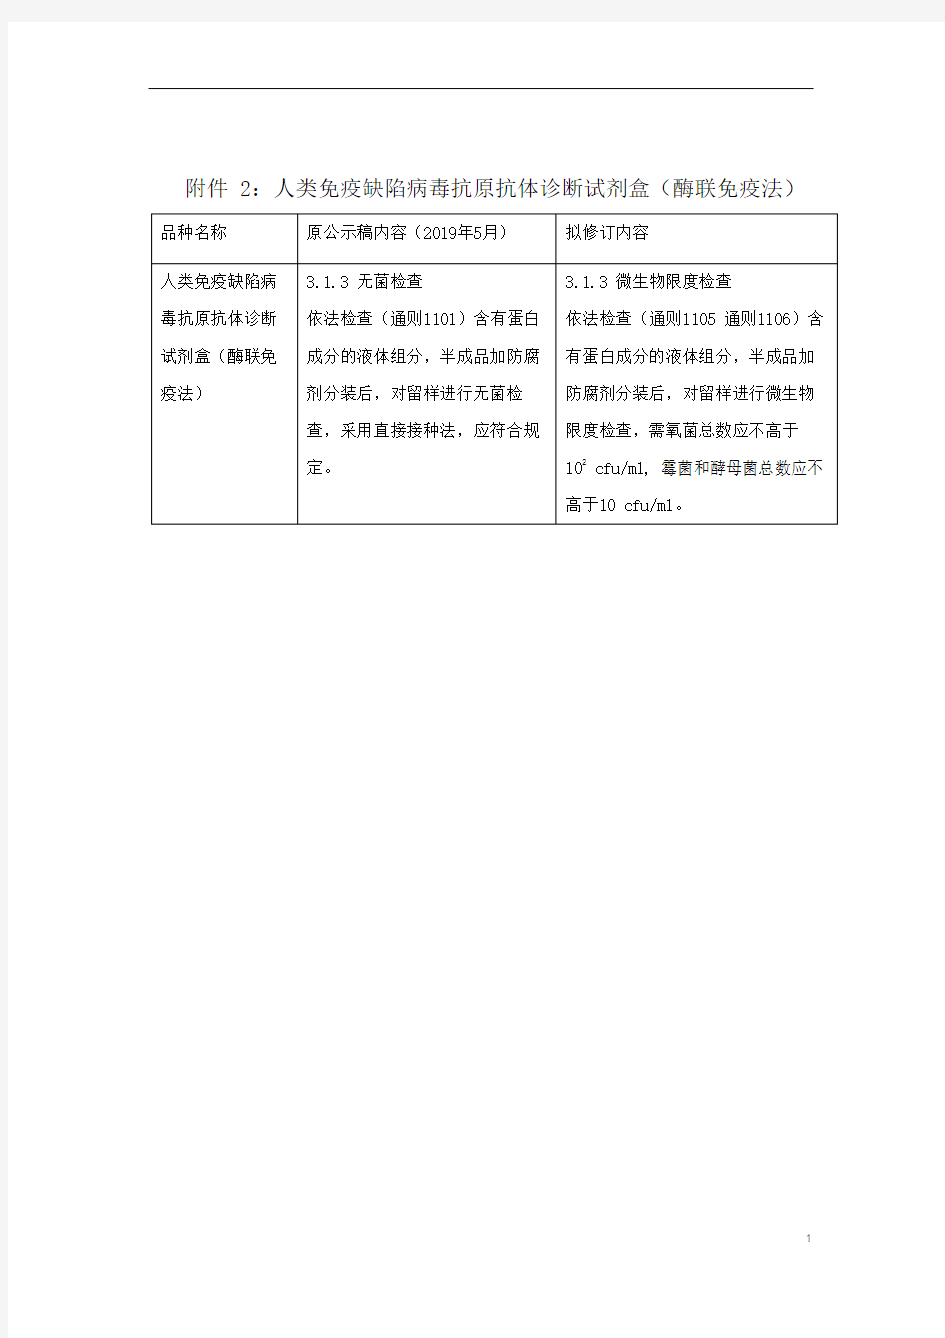 《中国药典》2020版—人类免疫缺陷病毒抗原抗体诊断试剂盒(酶联免疫法)